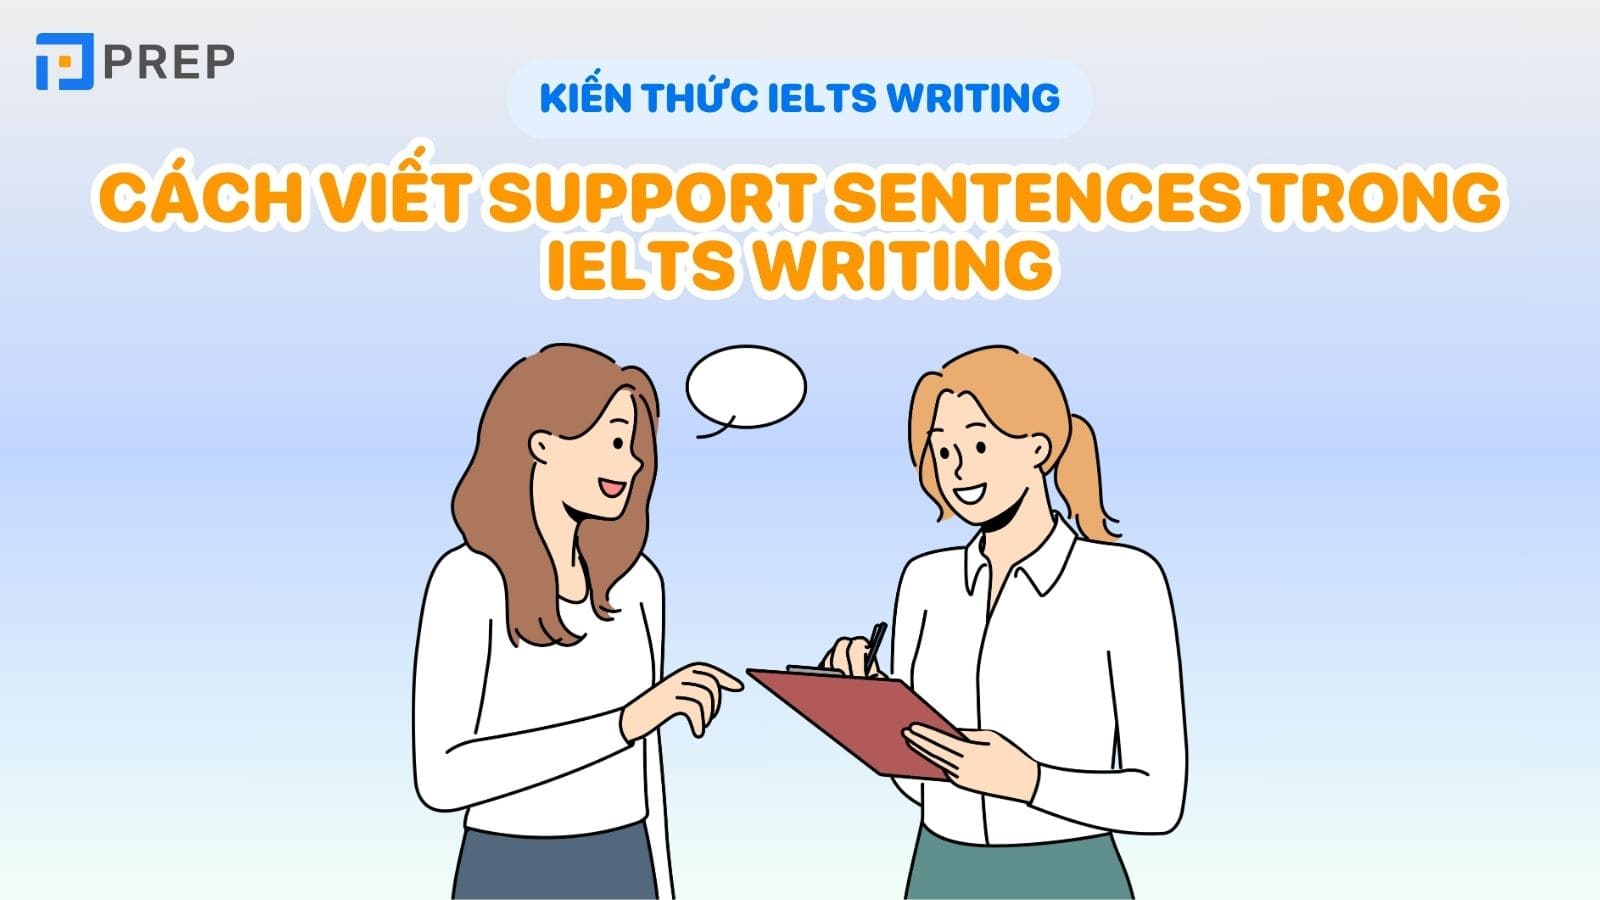 cach-viet-support-sentences-trong-ielts-writing.jpg